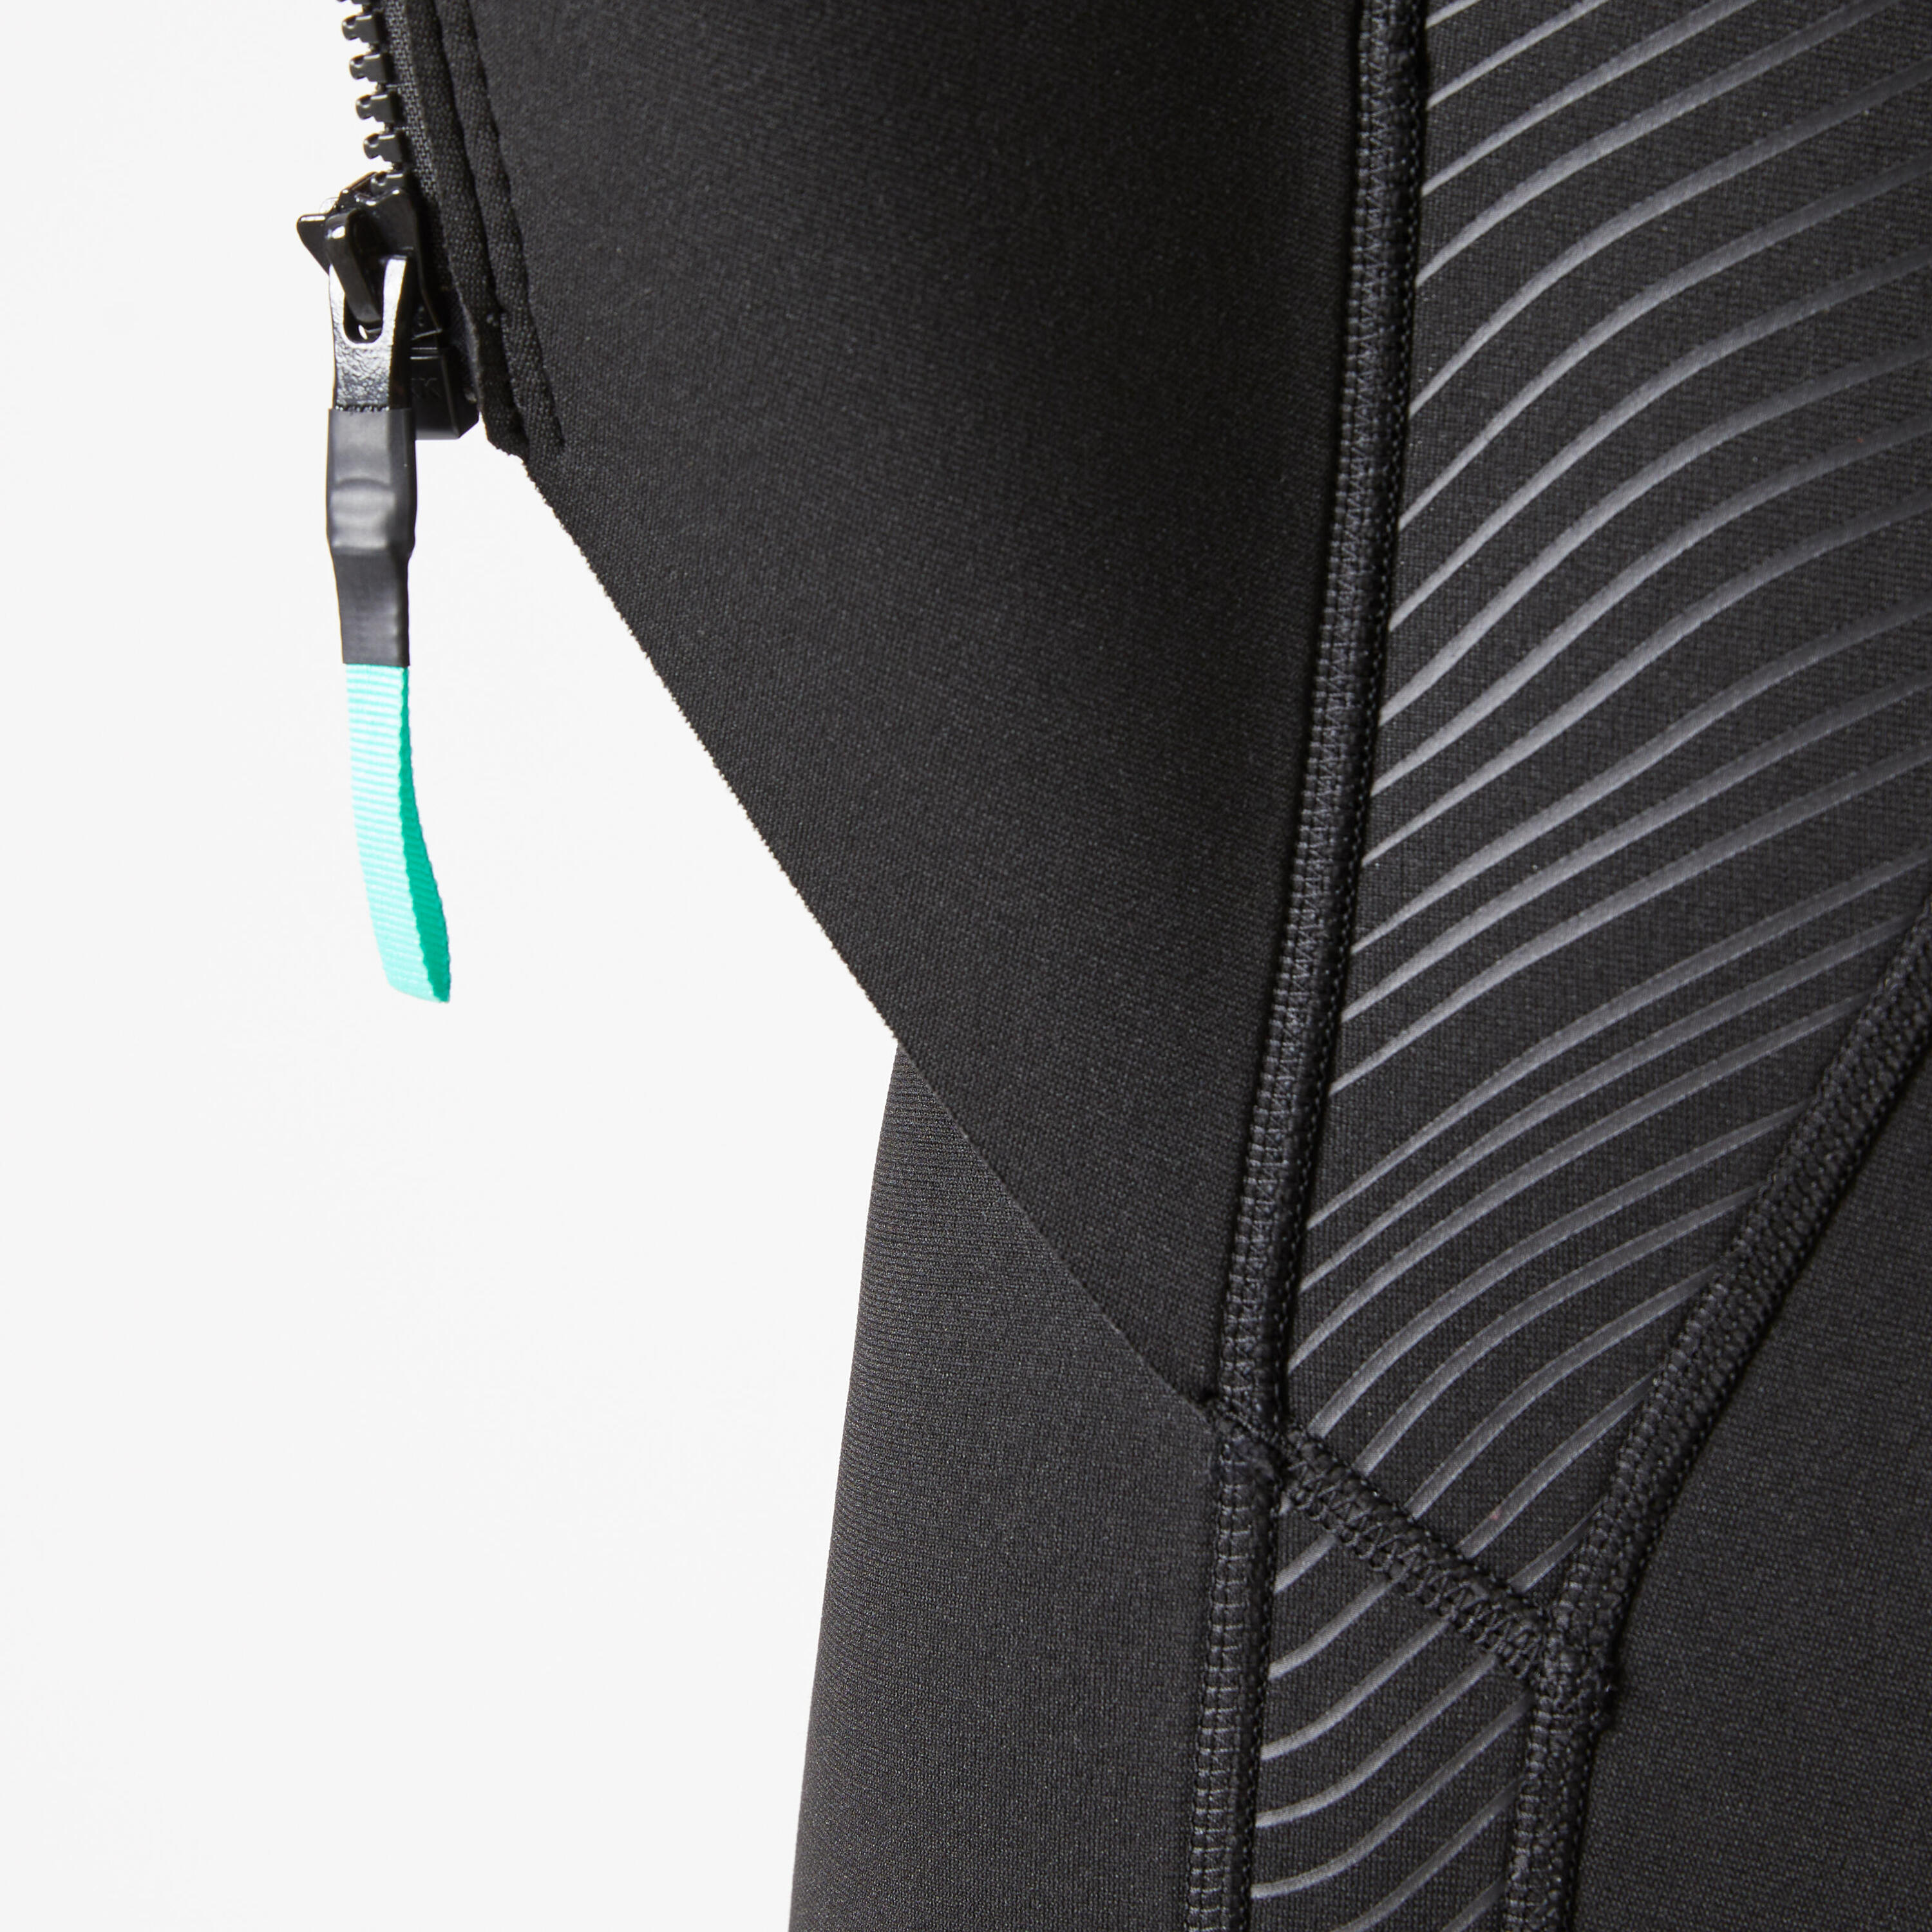 Men's 2 mm neoprene shorty wetsuit with diagonal front zip Easy 9/14